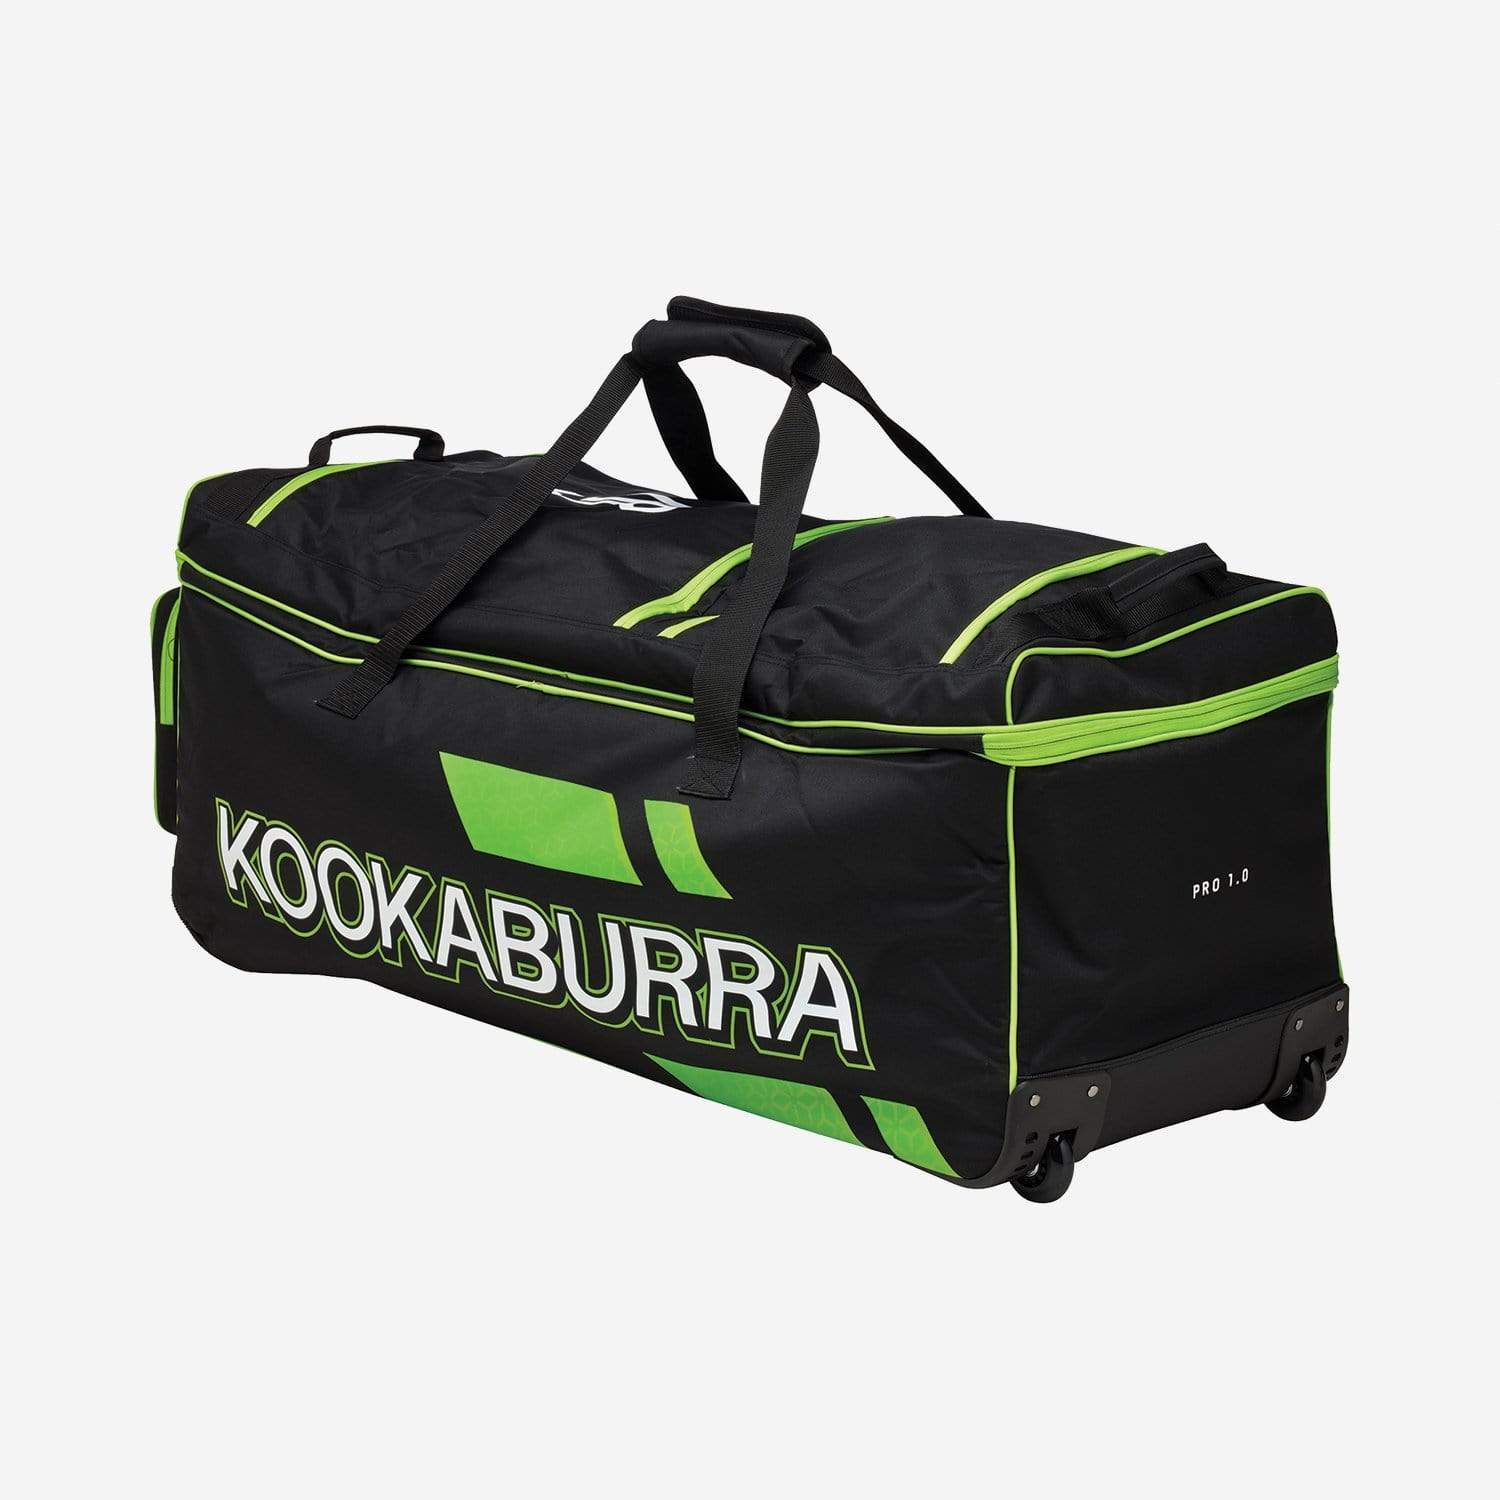 Kookaburra Cricket Bags Kookaburra Pro 1.0 Wheelie Cricket Bag